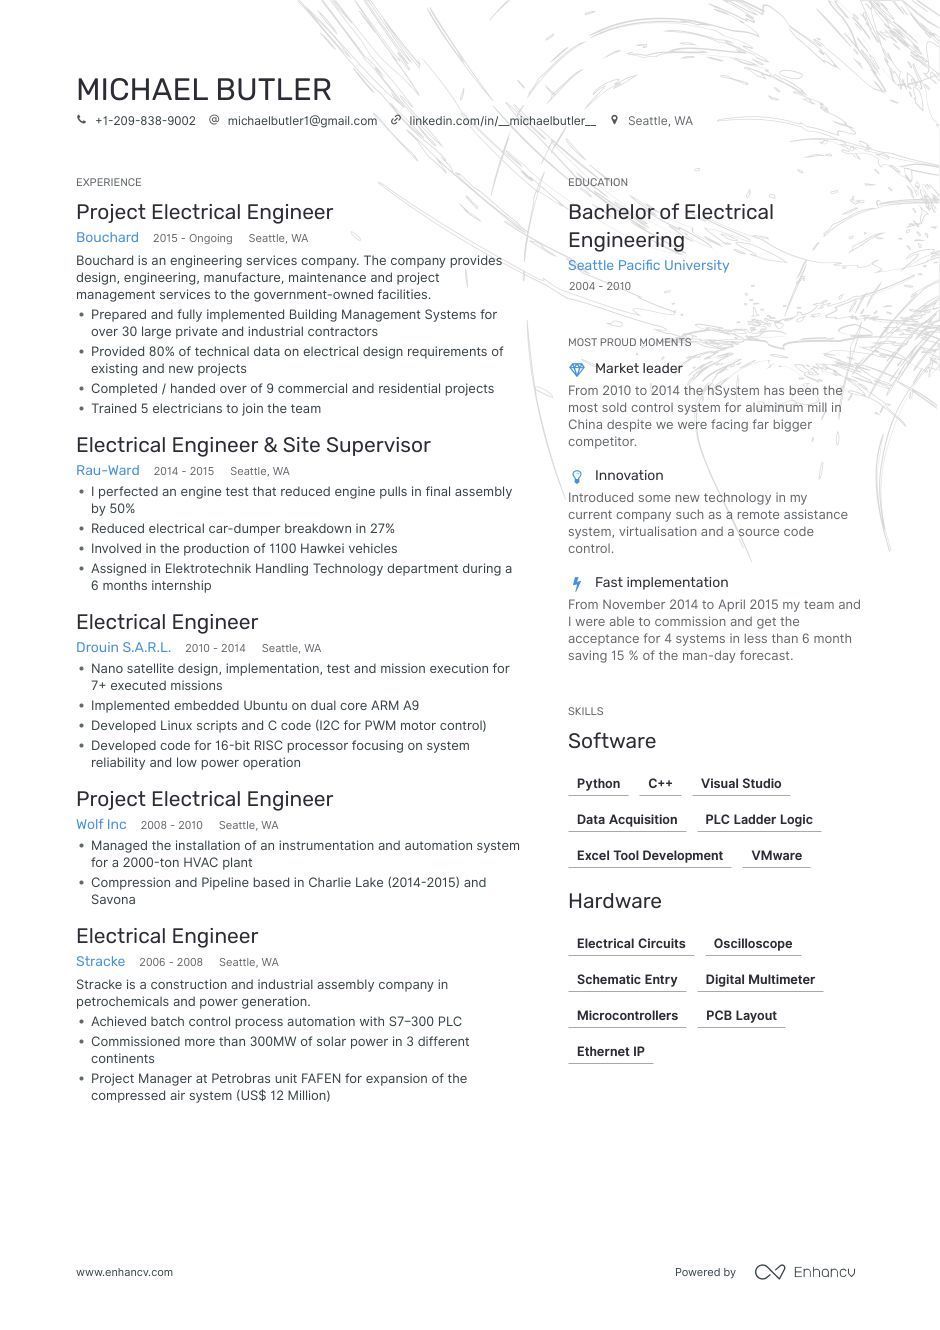 engineering_electrical-engineer.jpg